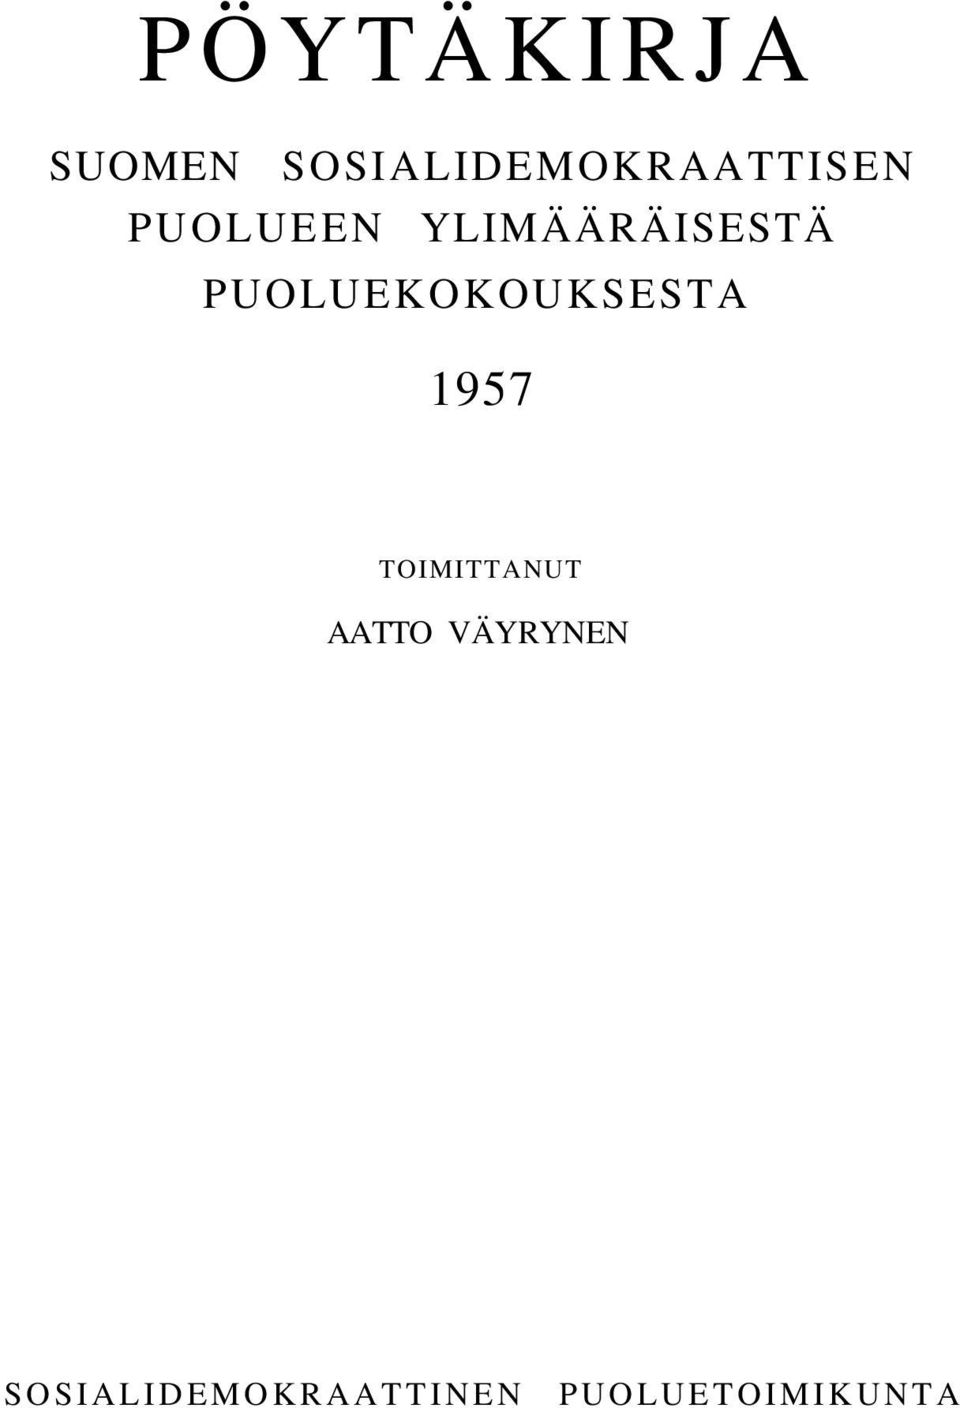 YLIMÄÄRÄISESTÄ PUOLUEKOKOUKSESTA 1957